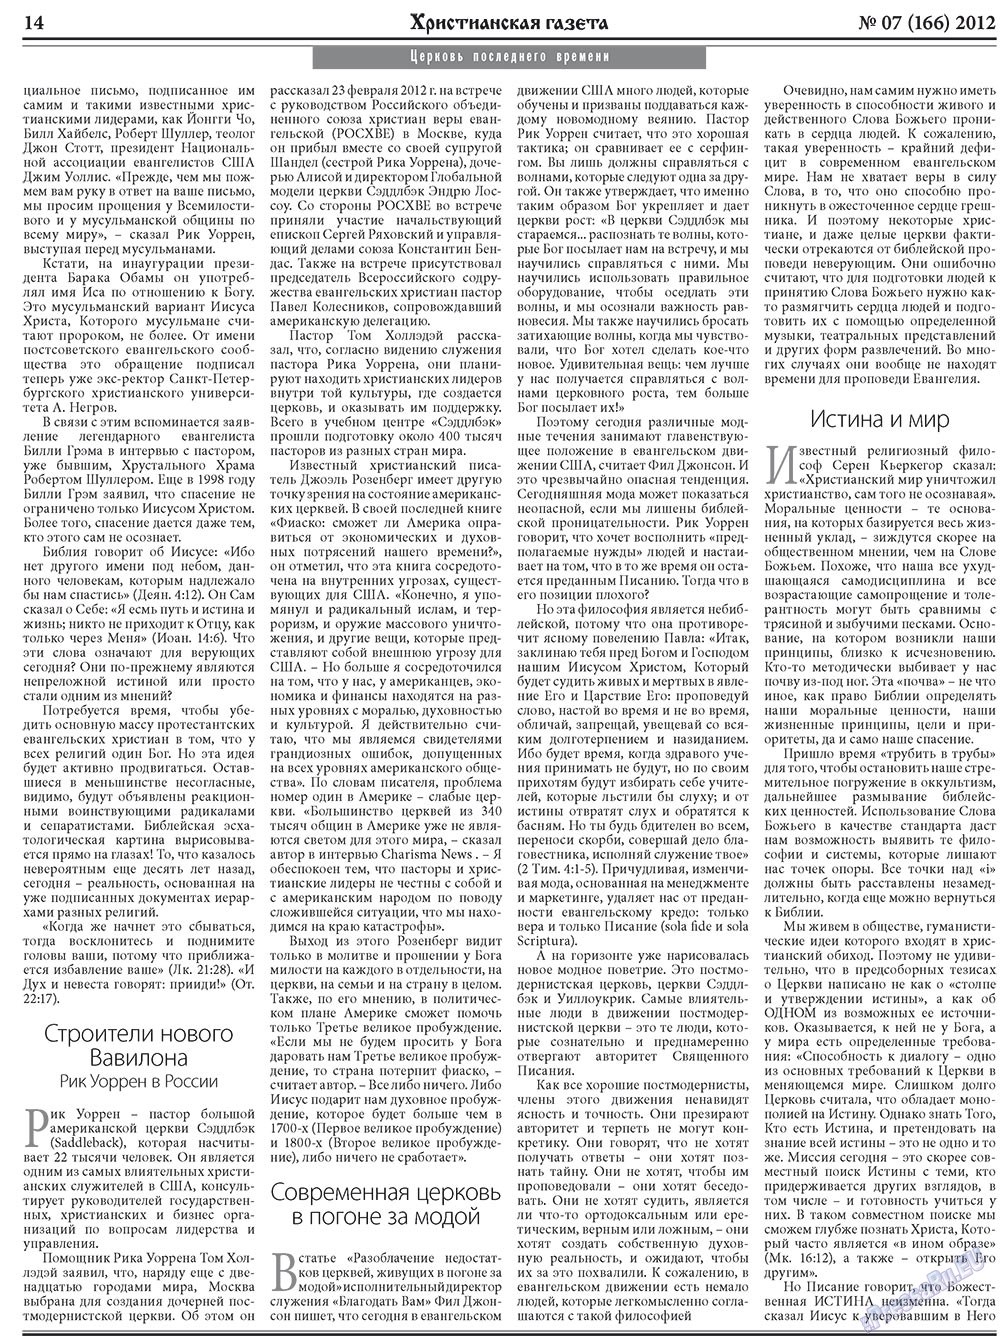 Христианская газета, газета. 2012 №7 стр.22